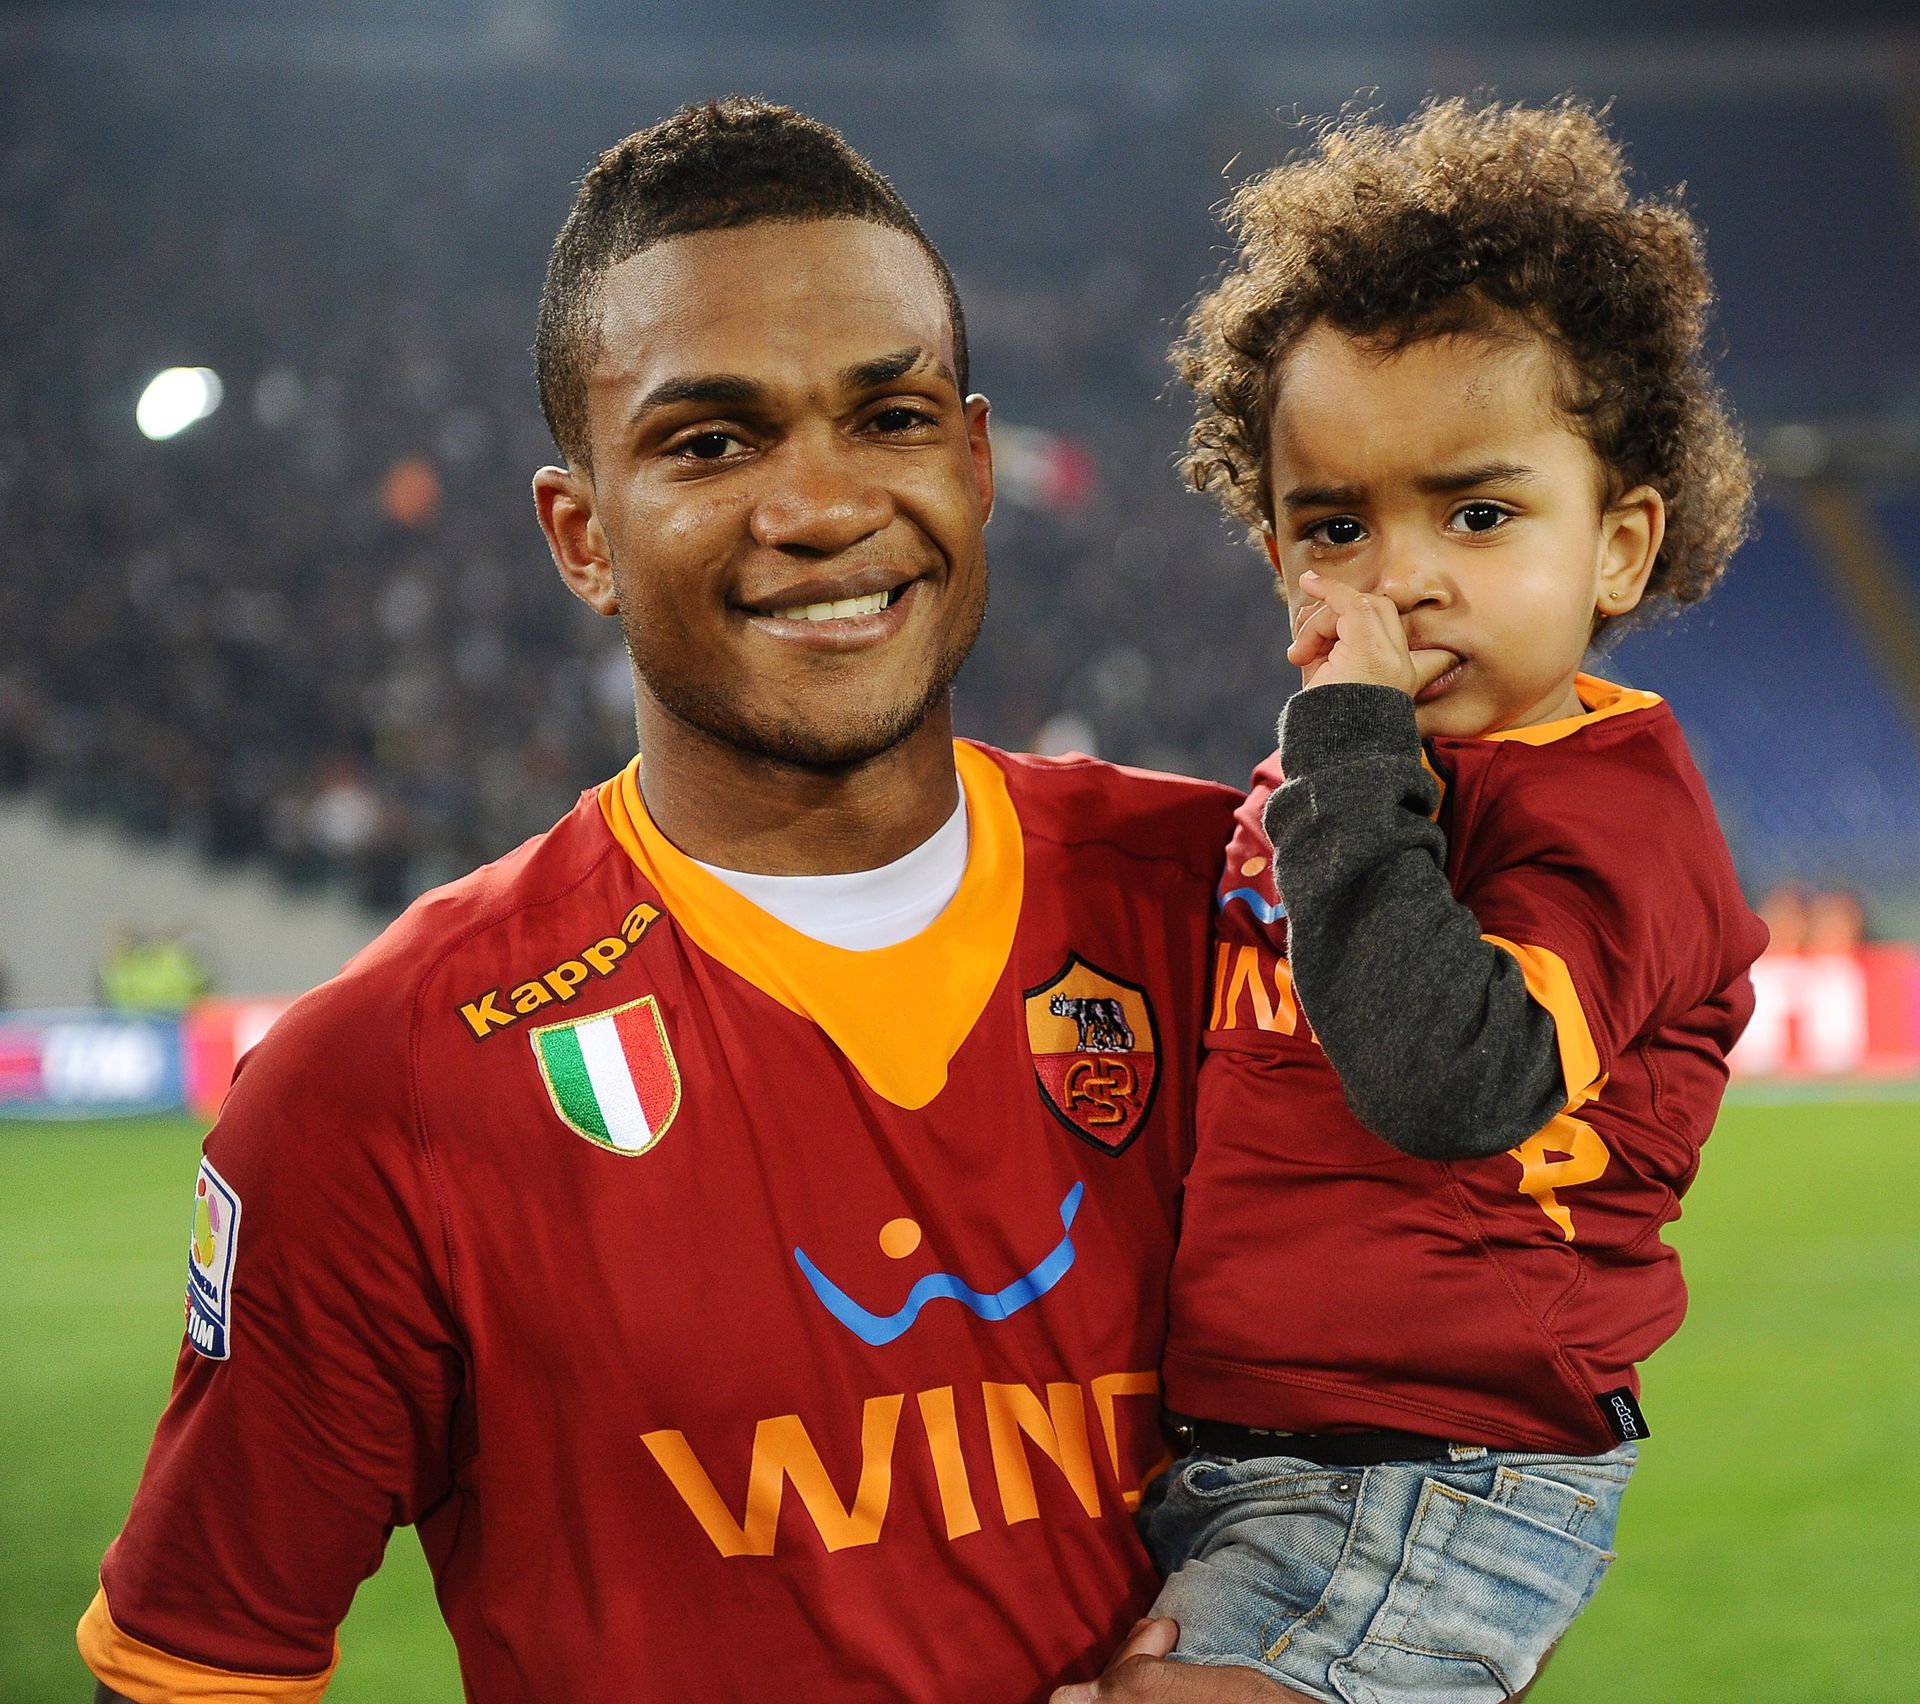 Kislányával az AS Roma színeiben 2012-ben (Fotó: Getty Images)